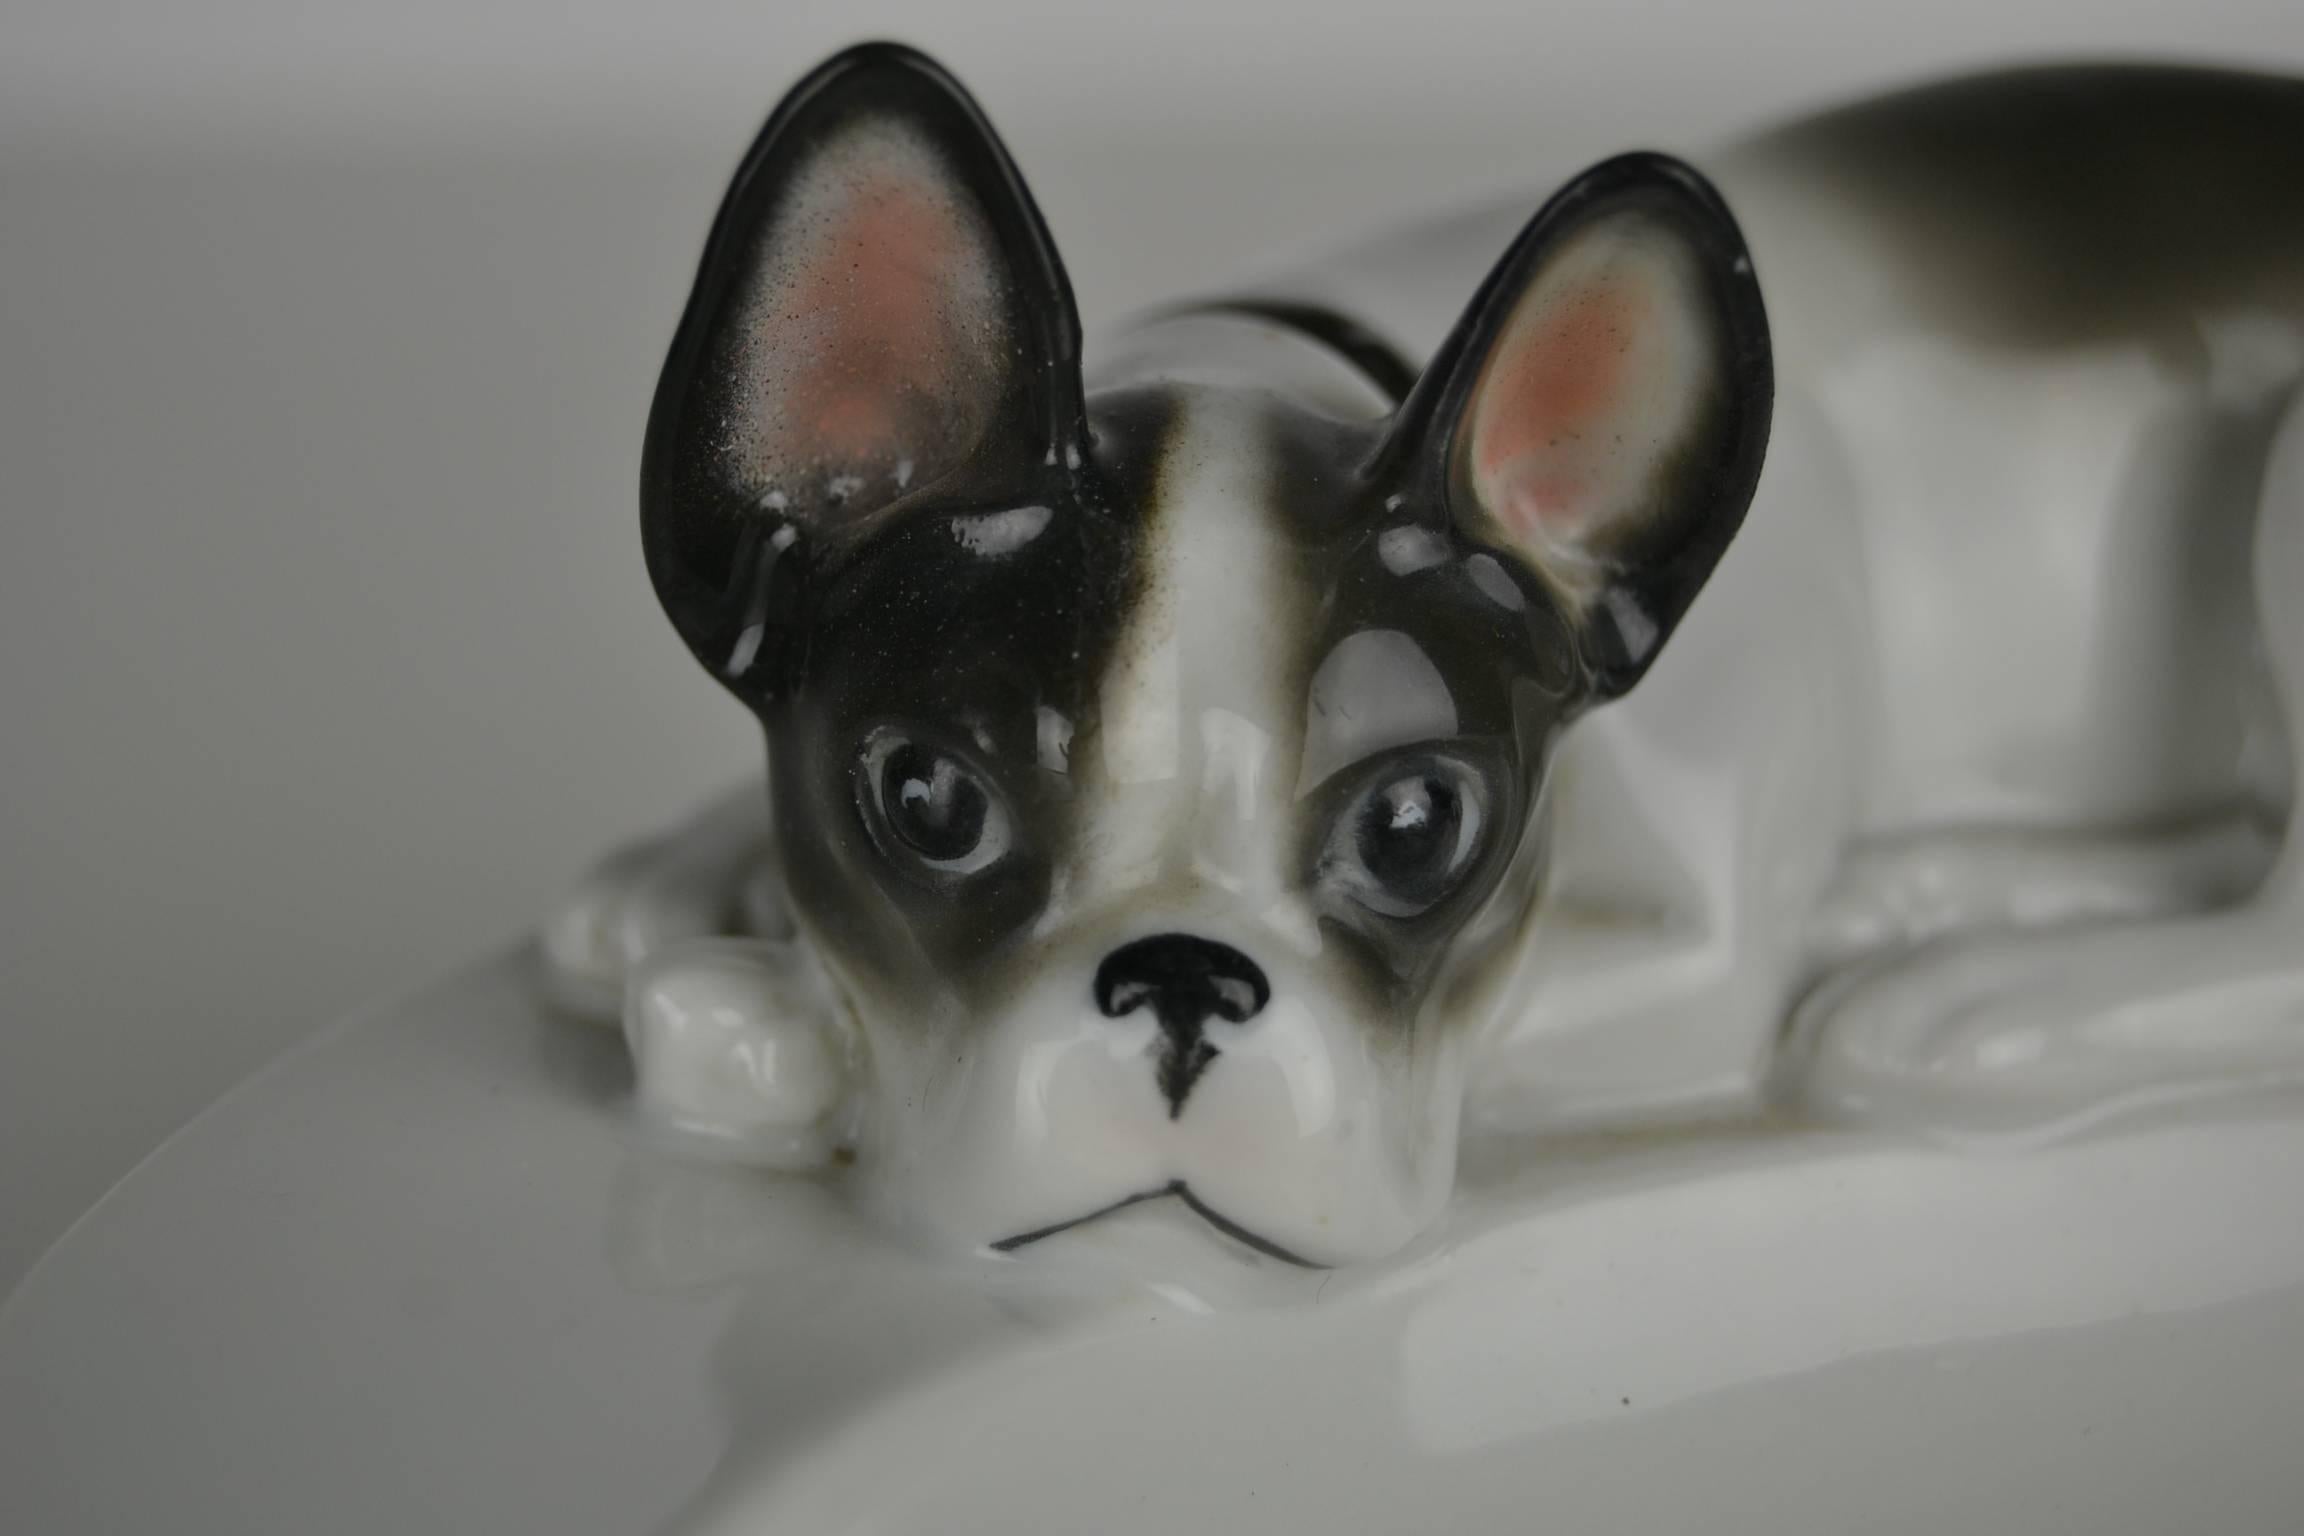 Weißer Porzellan-Aschenbecher mit liegender französischer Bulldogge auf dem Deckel. 
Dieser Art-Déco-Aschenbecher stammt aus den 1930er Jahren und wurde in Deutschland von der Porzellan- und Fayencefabrik Pfeffer Gotha hergestellt. Dieser